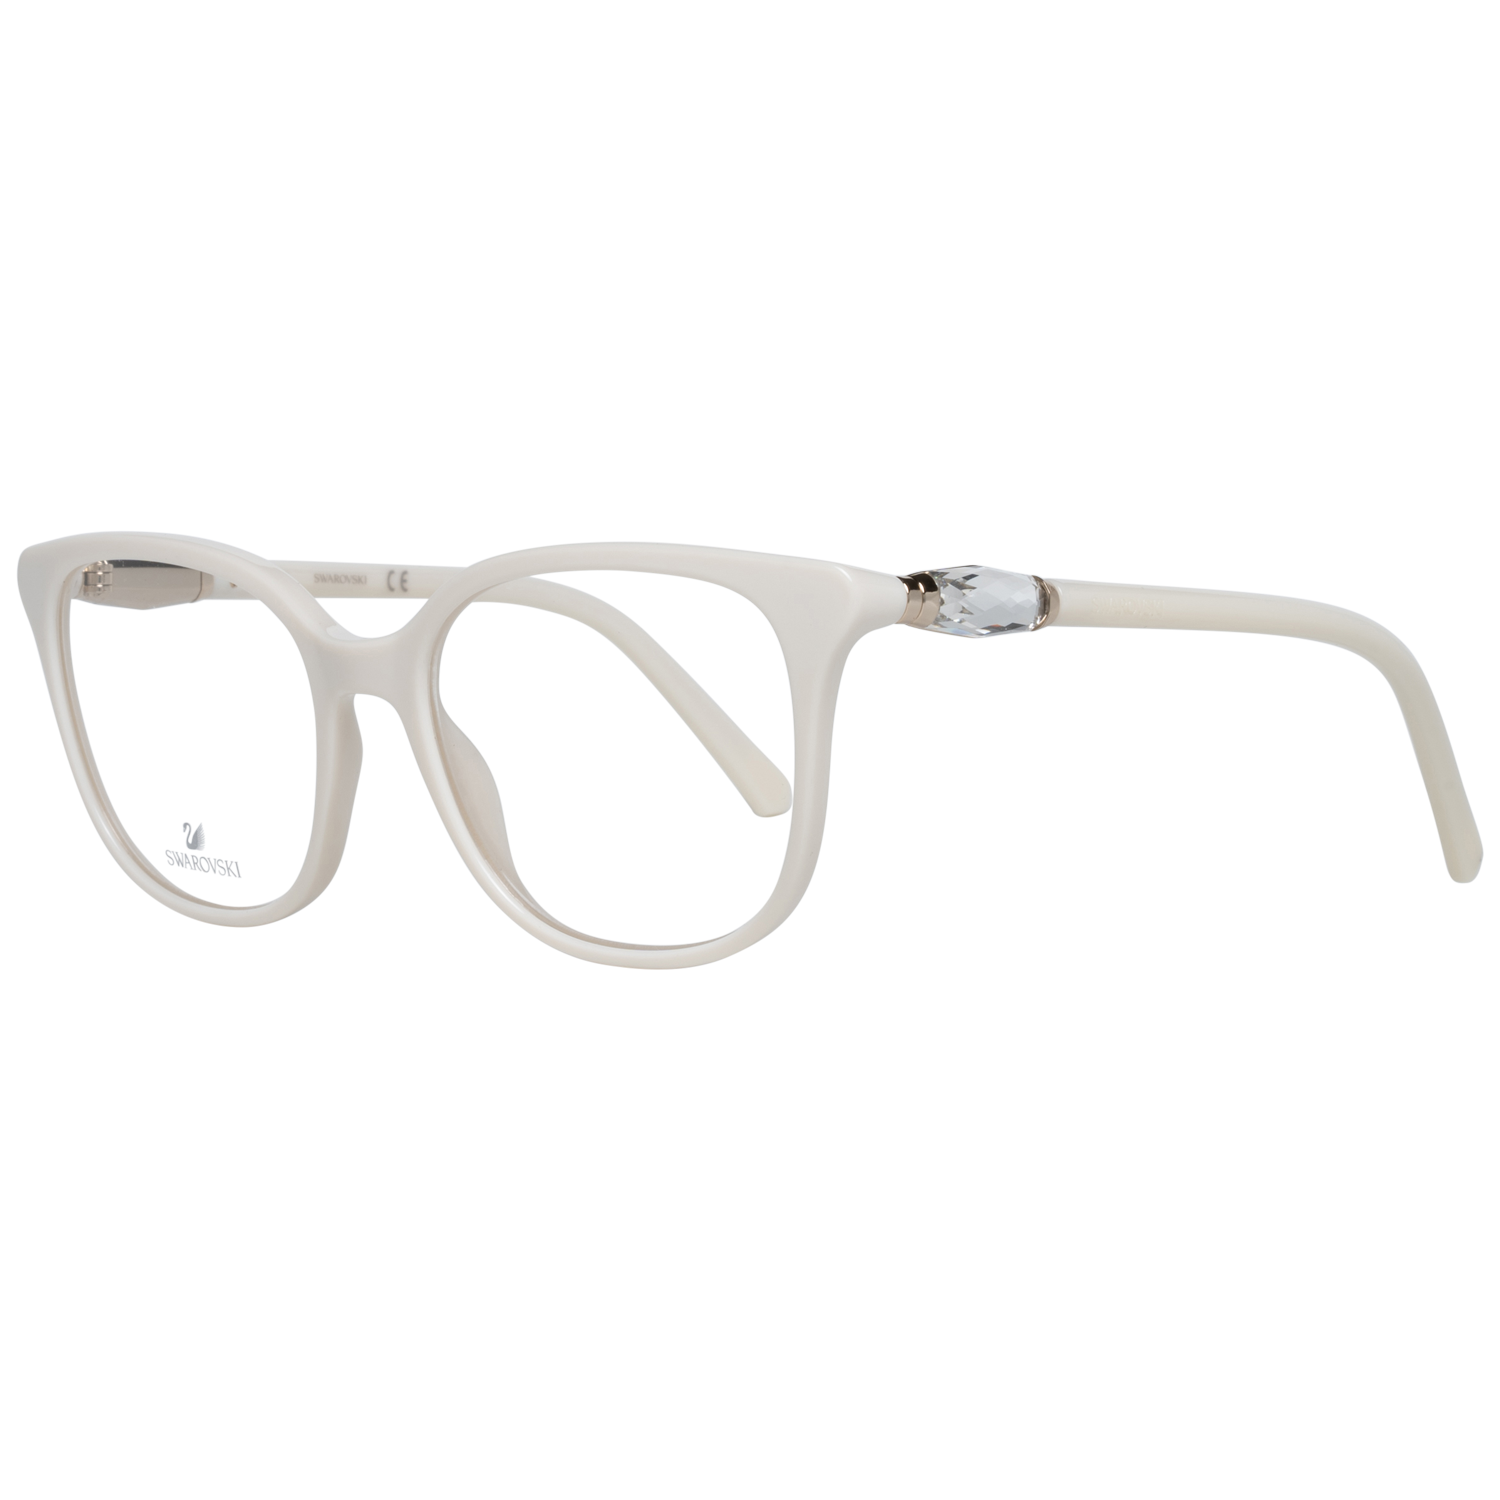 Swarovski Frames Swarovski Women Glasses Optical Frame SK5321 021 52 Eyeglasses Eyewear UK USA Australia 